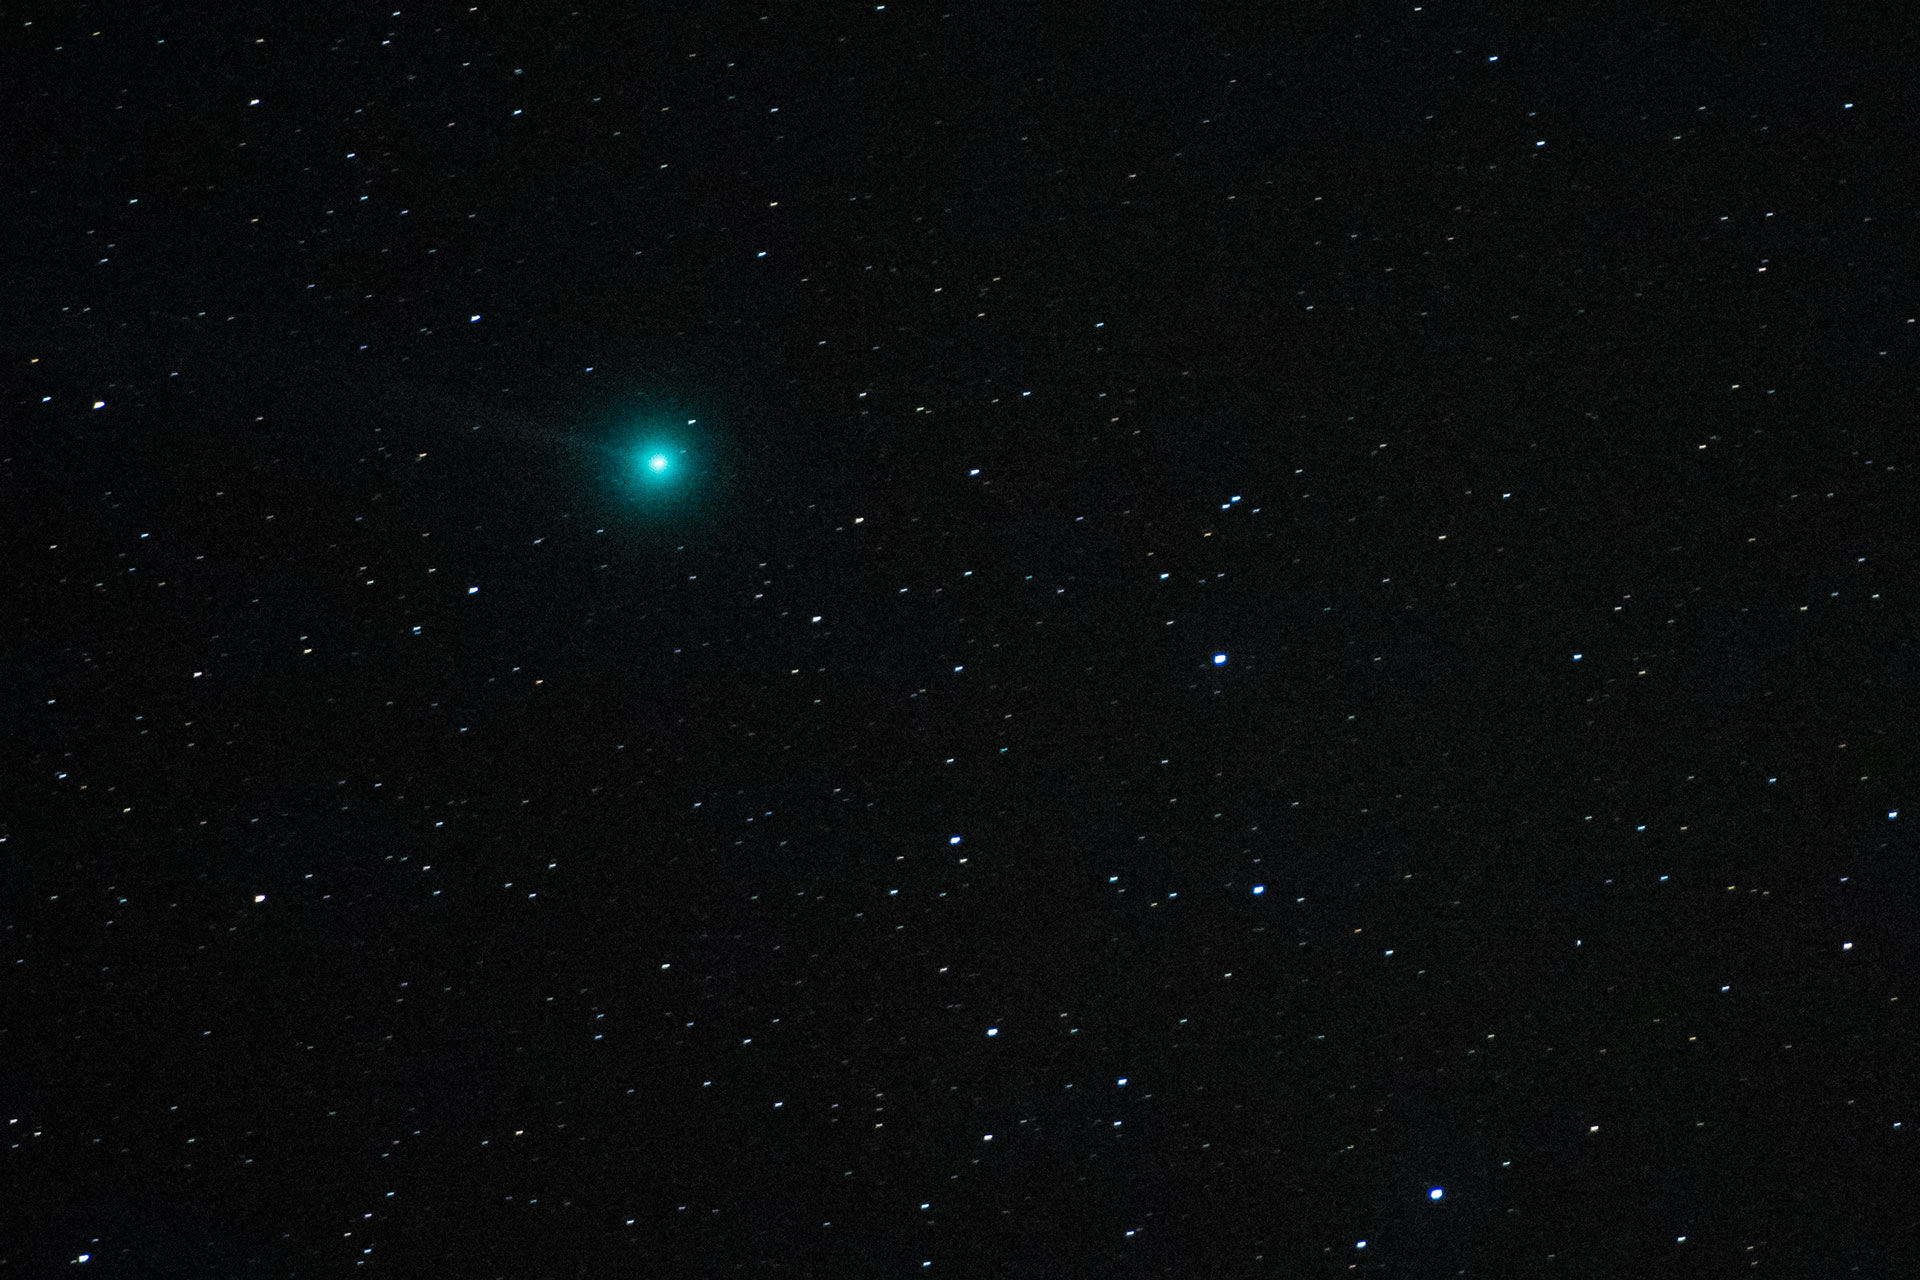 Lovejoy Comet